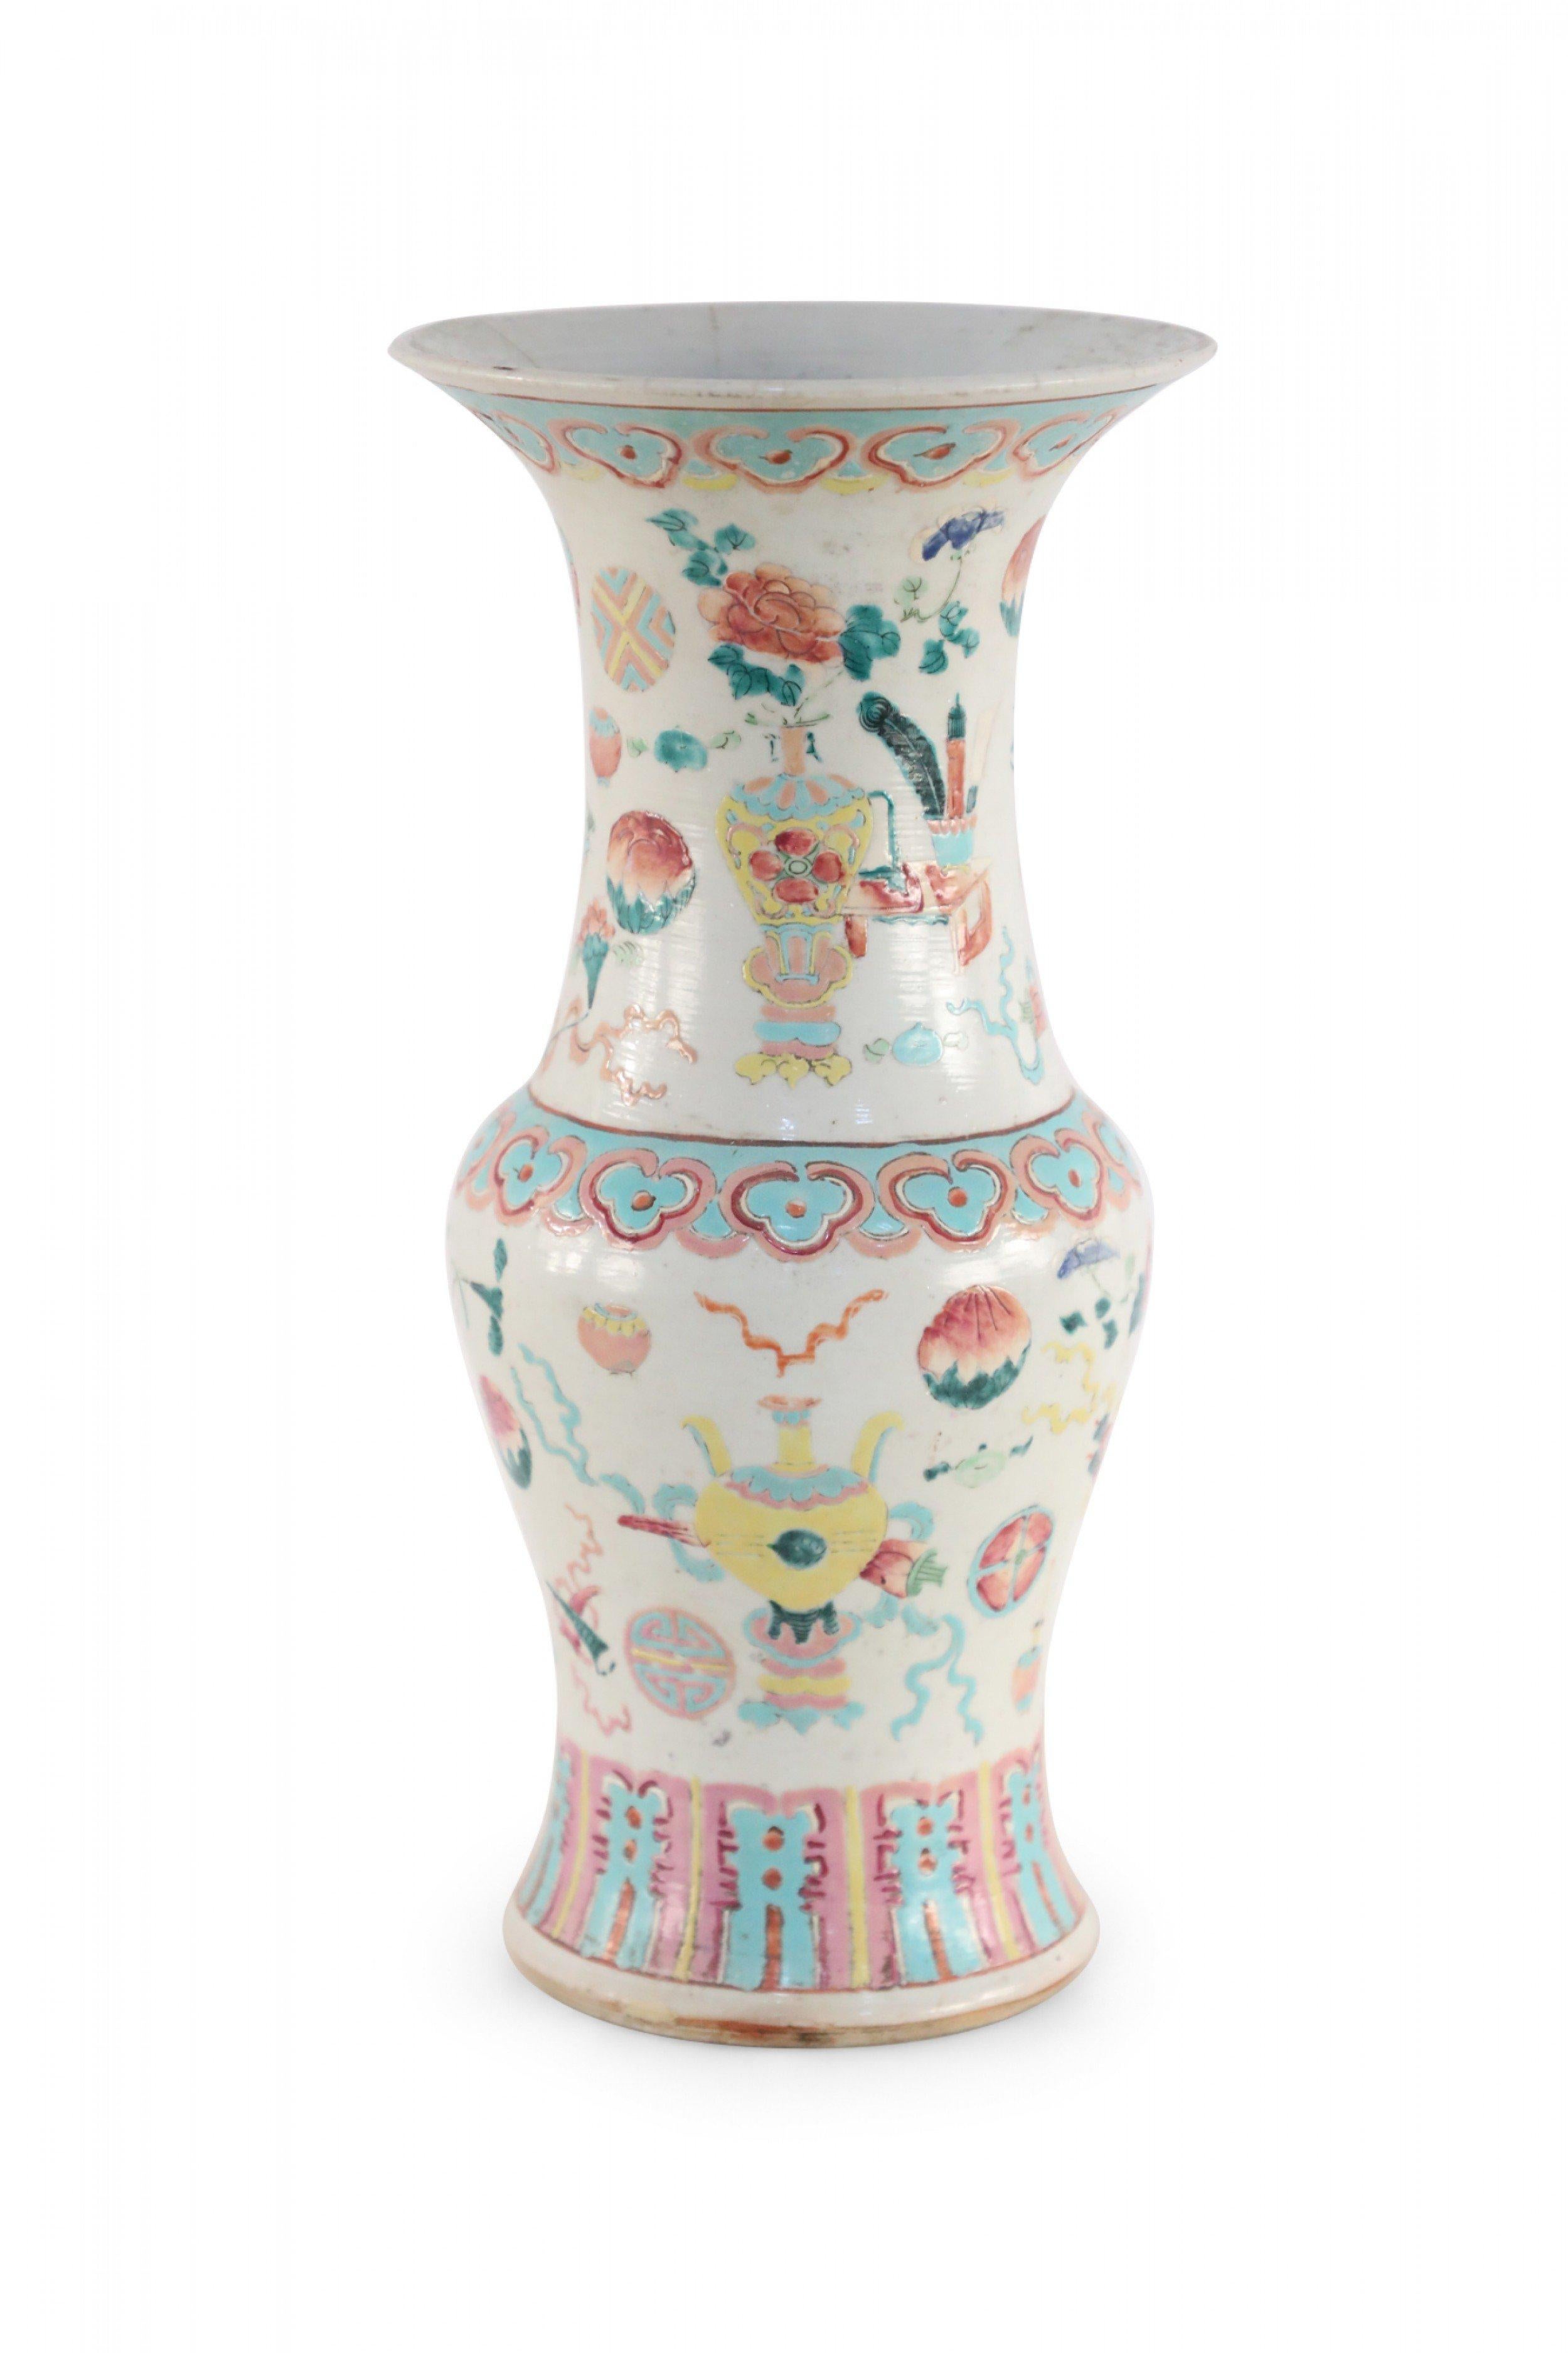 Ancienne urne chinoise (début du 20e siècle) en porcelaine blanche peinte avec un motif bogu rose, bleu clair et jaune - un thème décoratif traditionnel qui utilise des objets comme le bronze, la porcelaine, les pièces de jade, les peintures, la